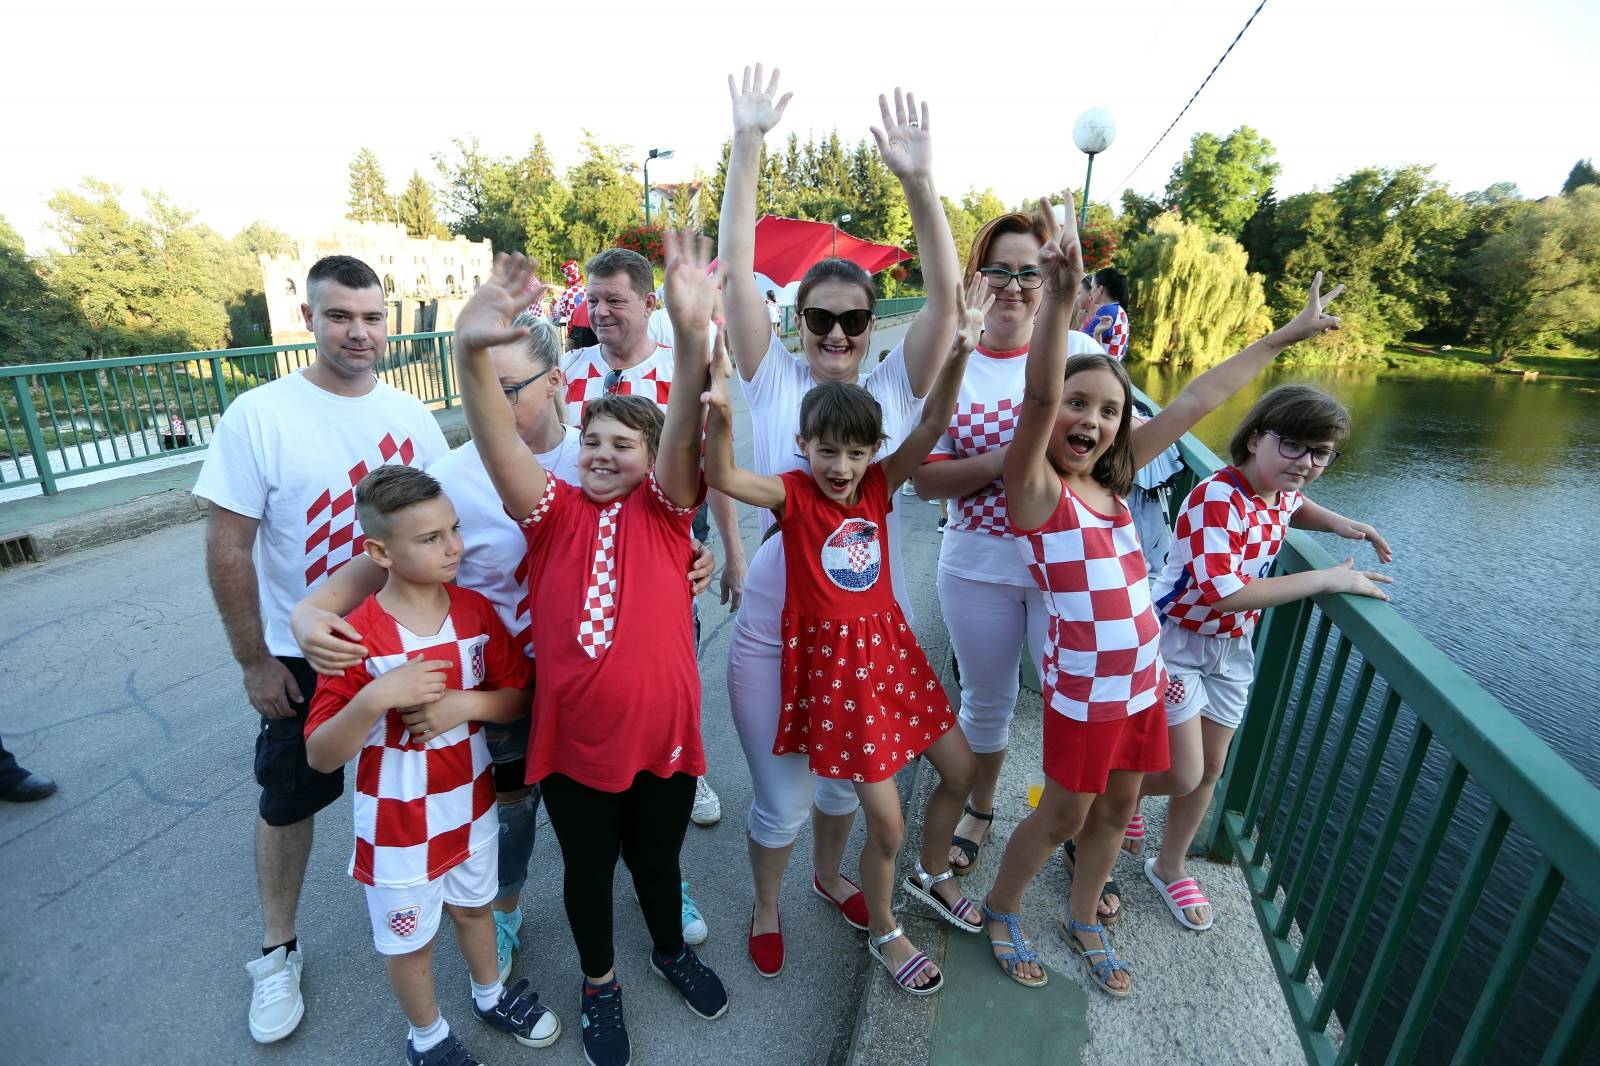 Ozalj: Velikom hrvatskom zastavom na mostu obiljeÅ¾en Dan zajedniÅ¡tva